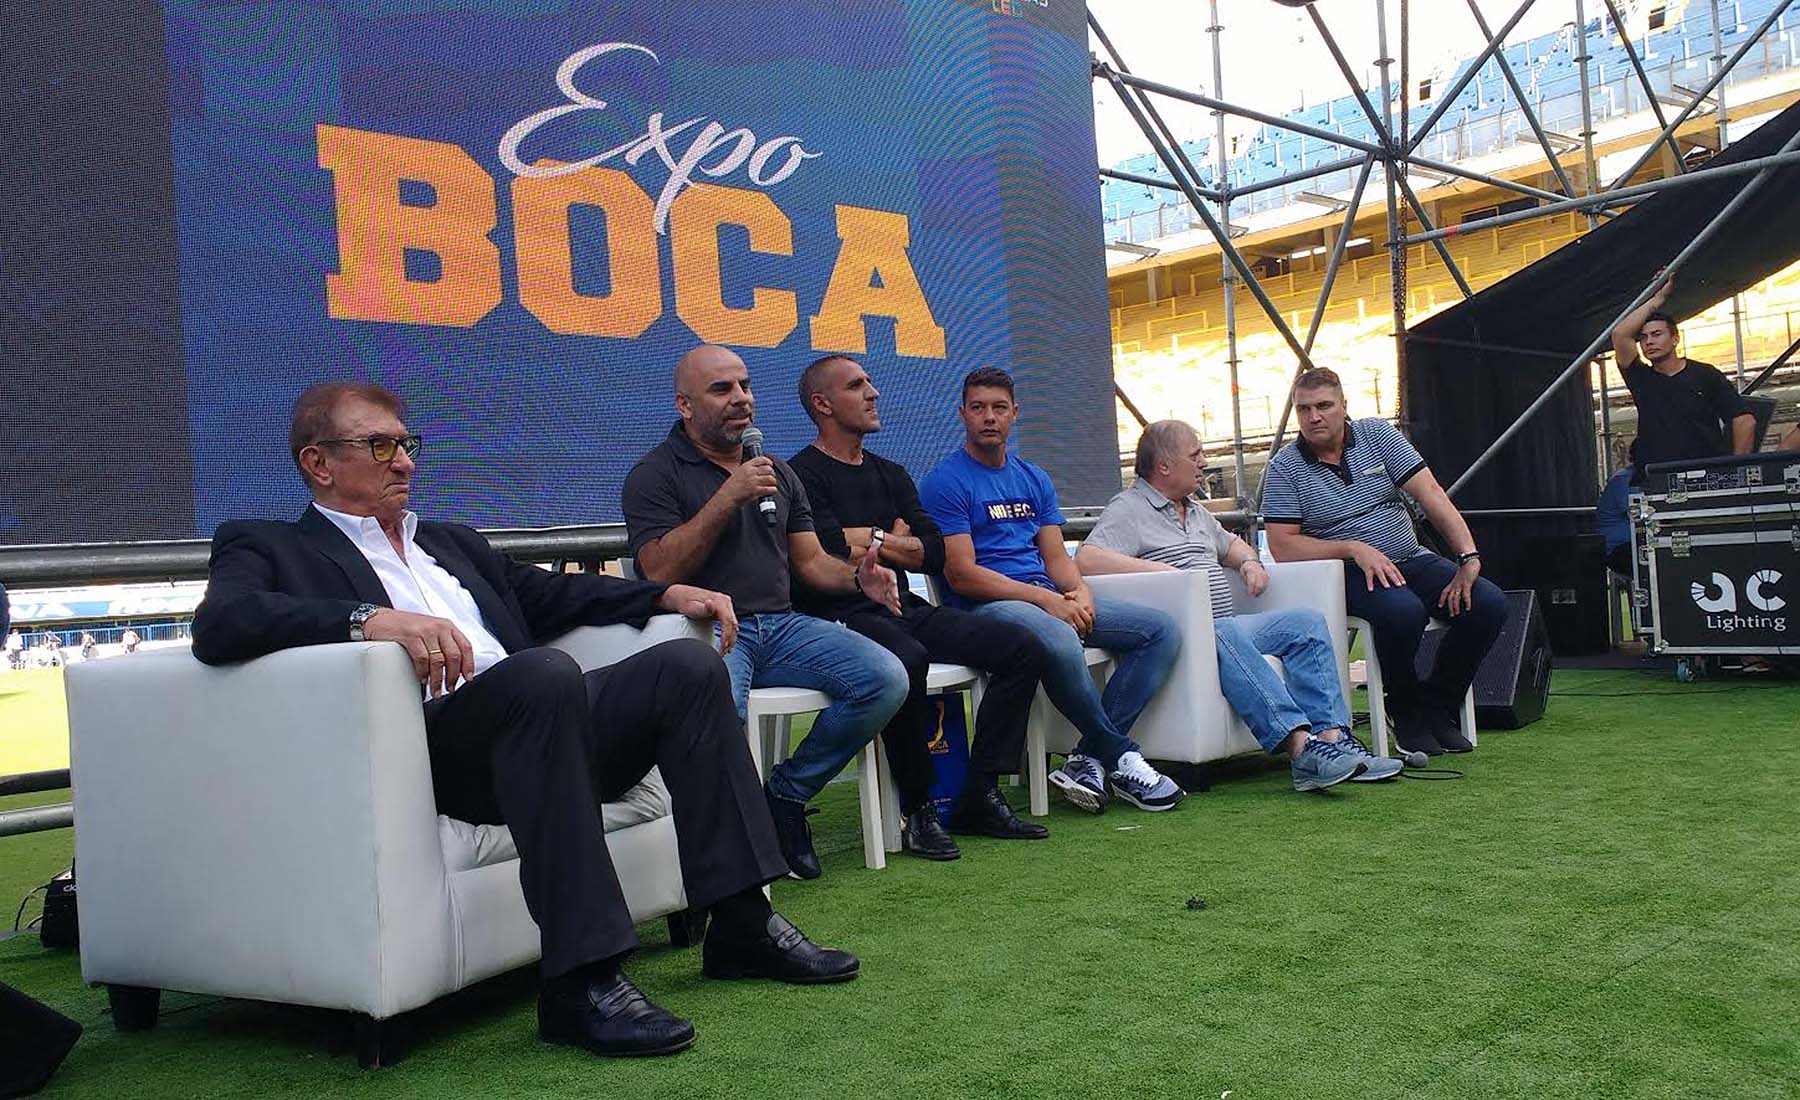 Expo Boca